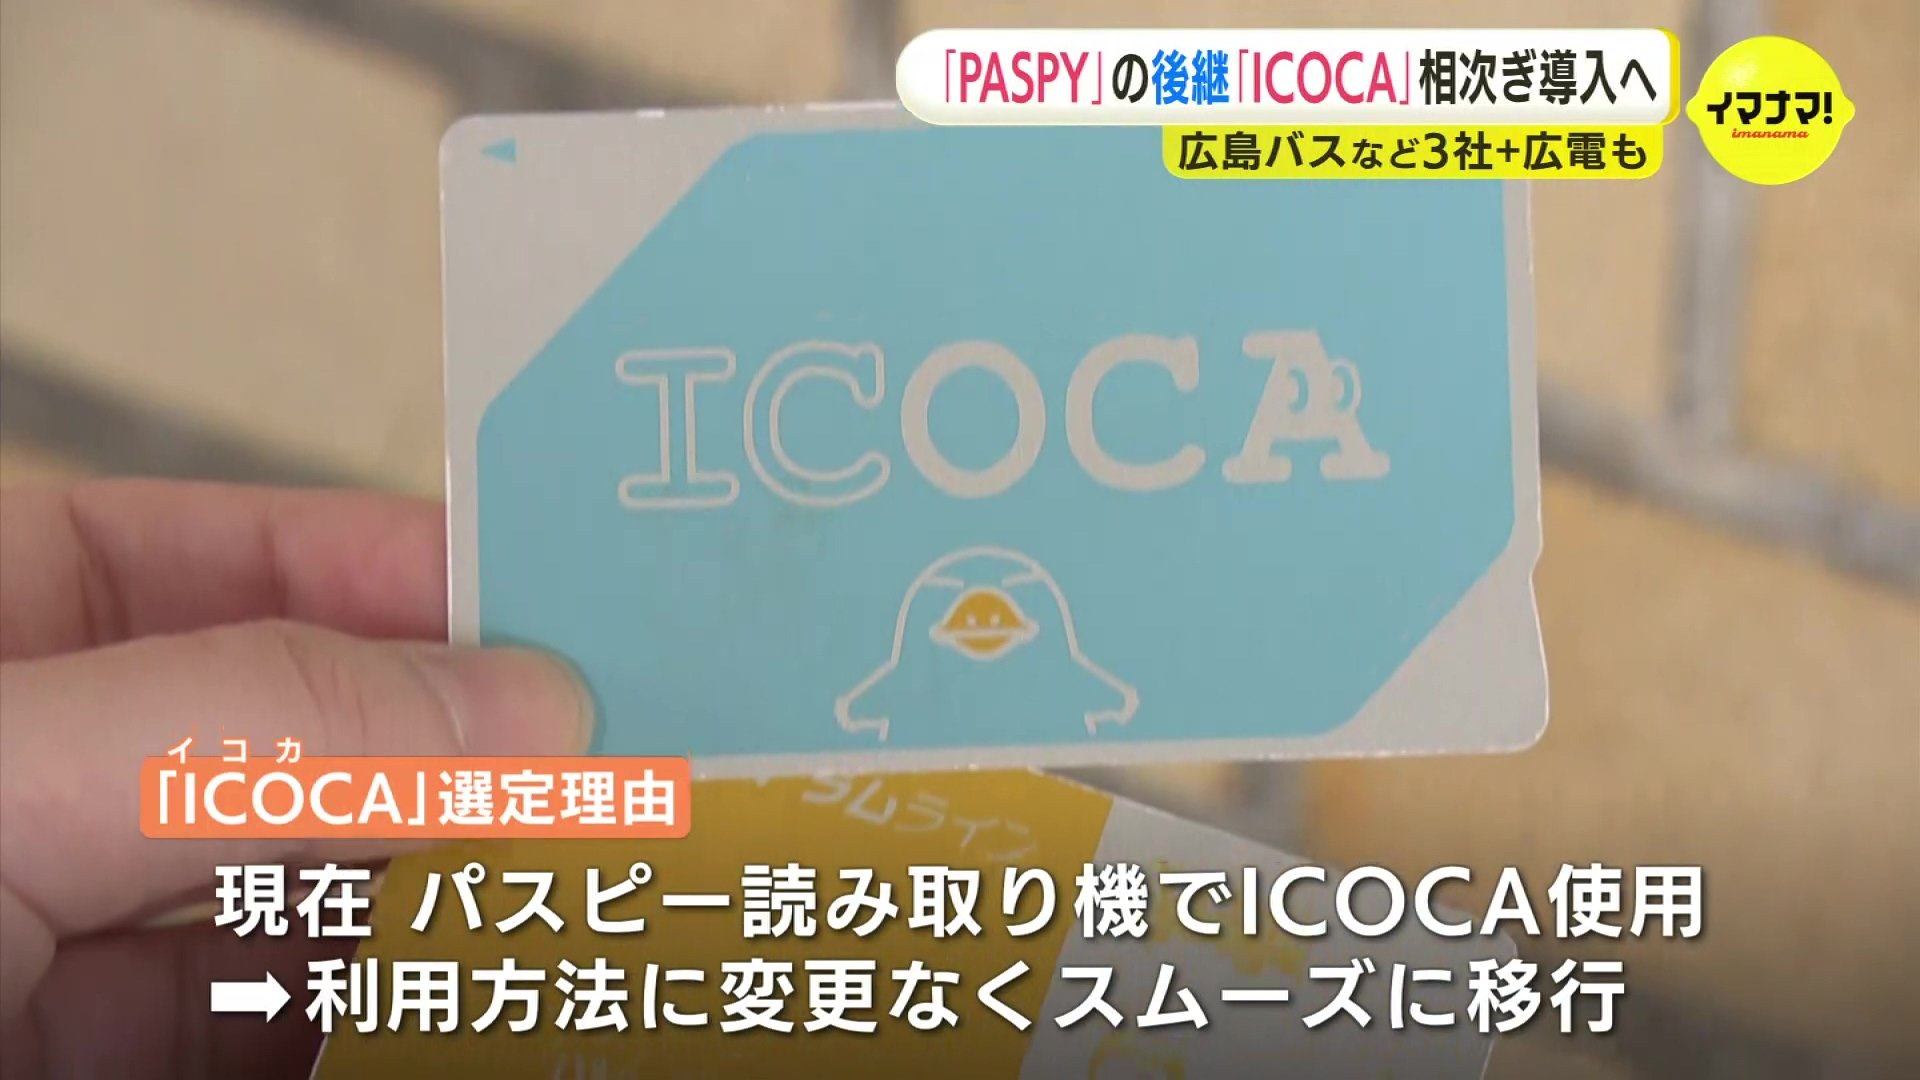 広島のバス3社 「PASPY」終了後に「ICOCA」導入の方針 新システム開発 